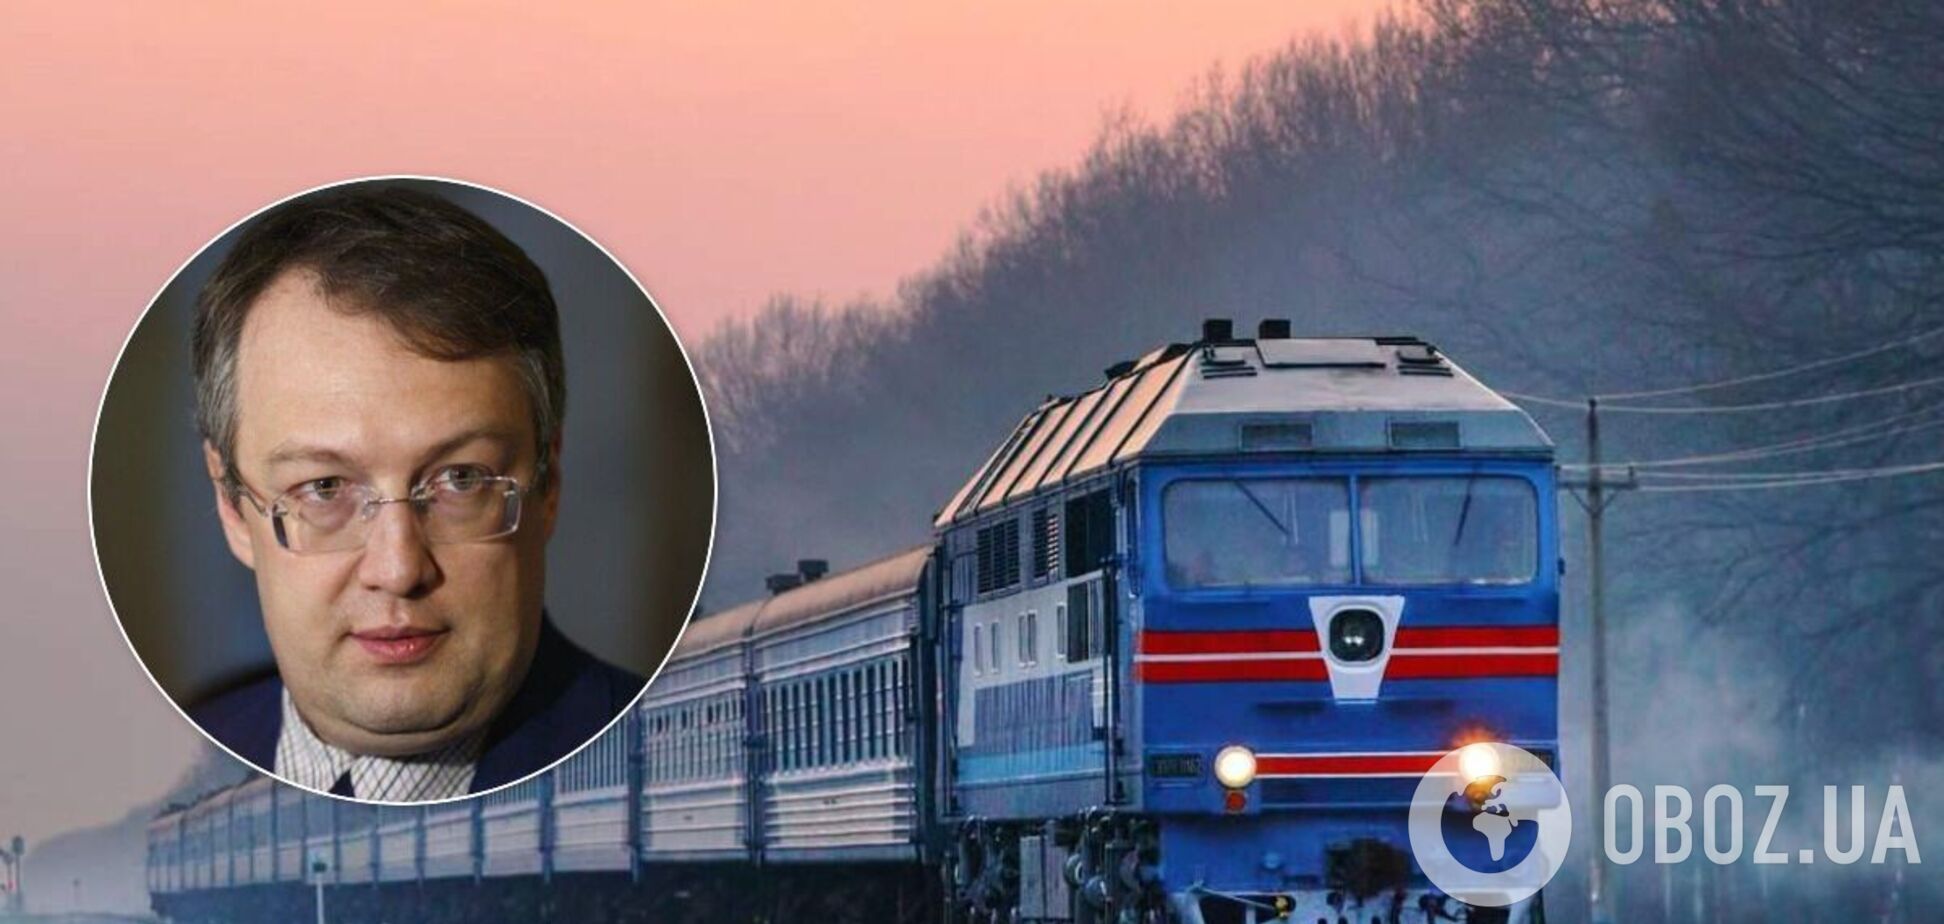 Геращенко встретил поезд, с которого сняли дебоширов